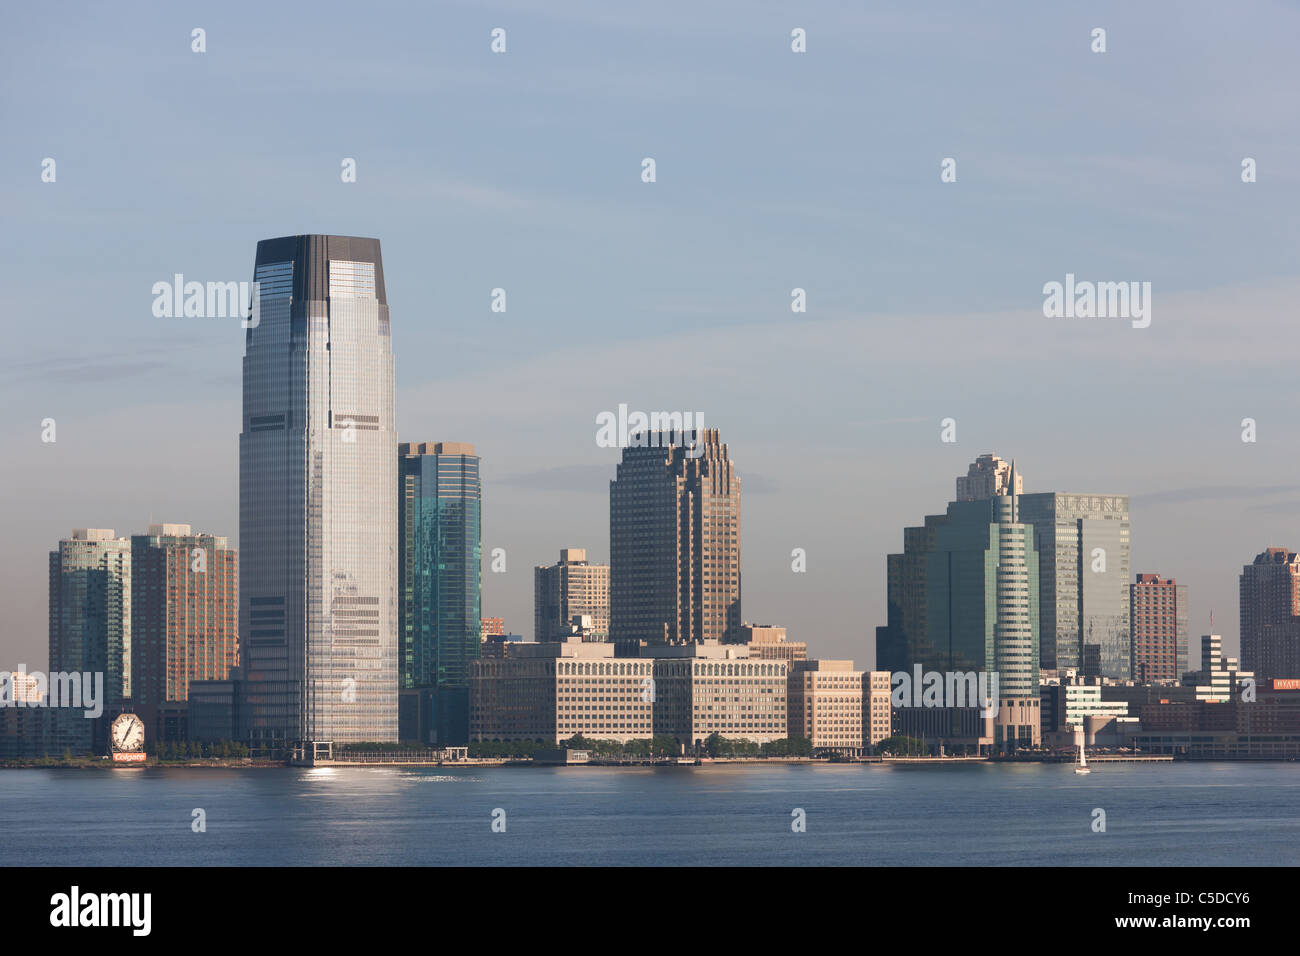 Die Goldman Sachs Turm und Colgate-Palmolive Uhr zusammen mit anderen Gebäuden auf die Skyline von Jersey City, New Jersey. Stockfoto